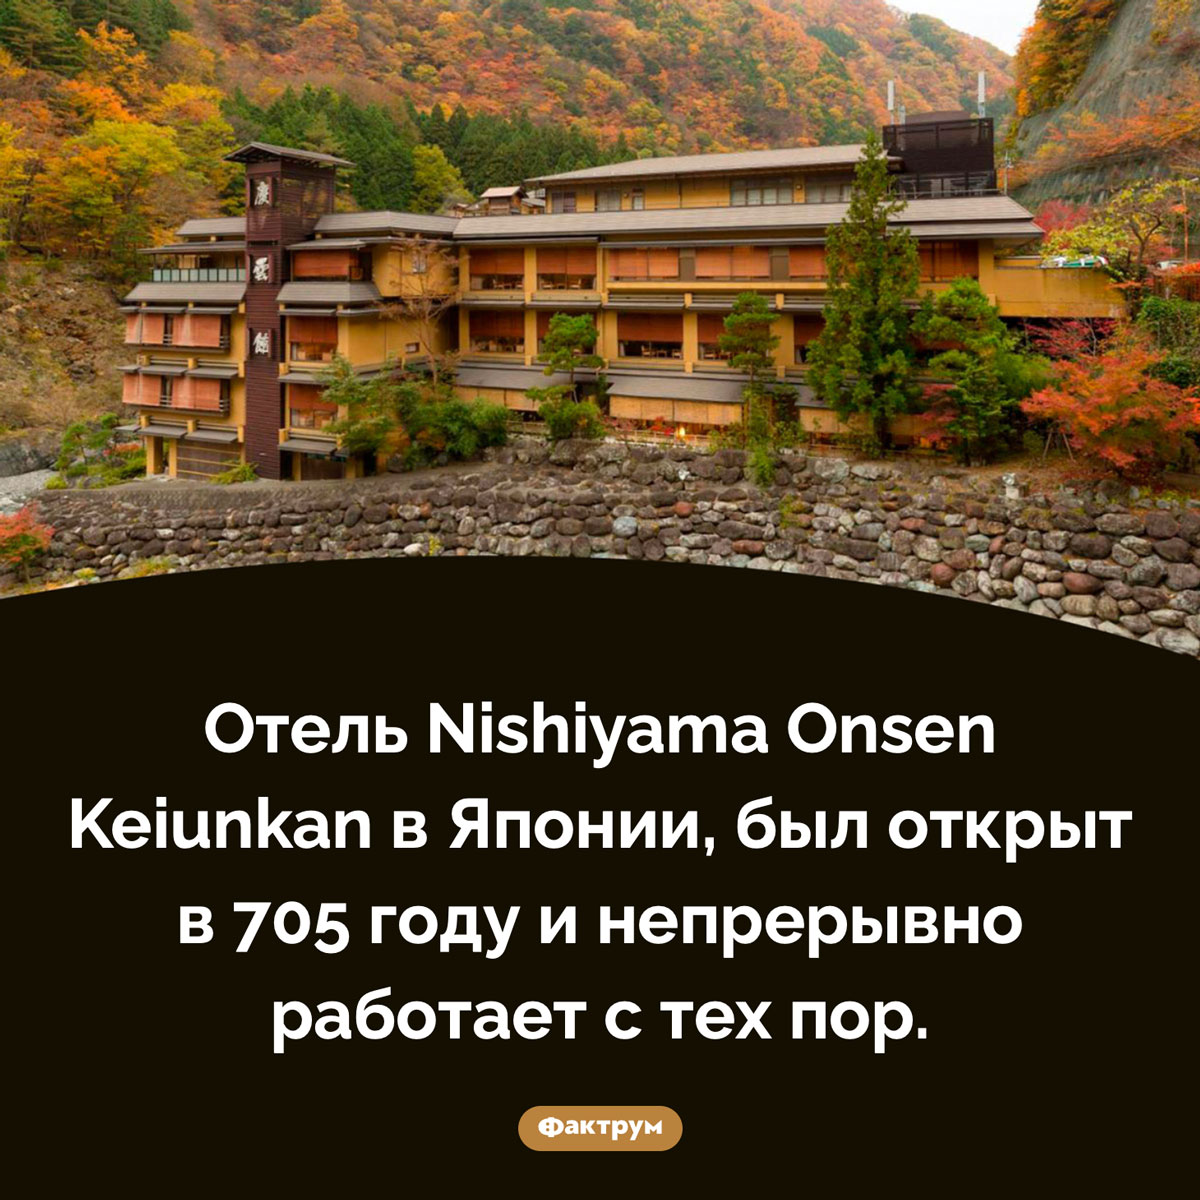 Самый старый отель в мире. Отель Nishiyama Onsen Keiunkan в Японии, был открыт в 705 году и непрерывно работает с тех пор.